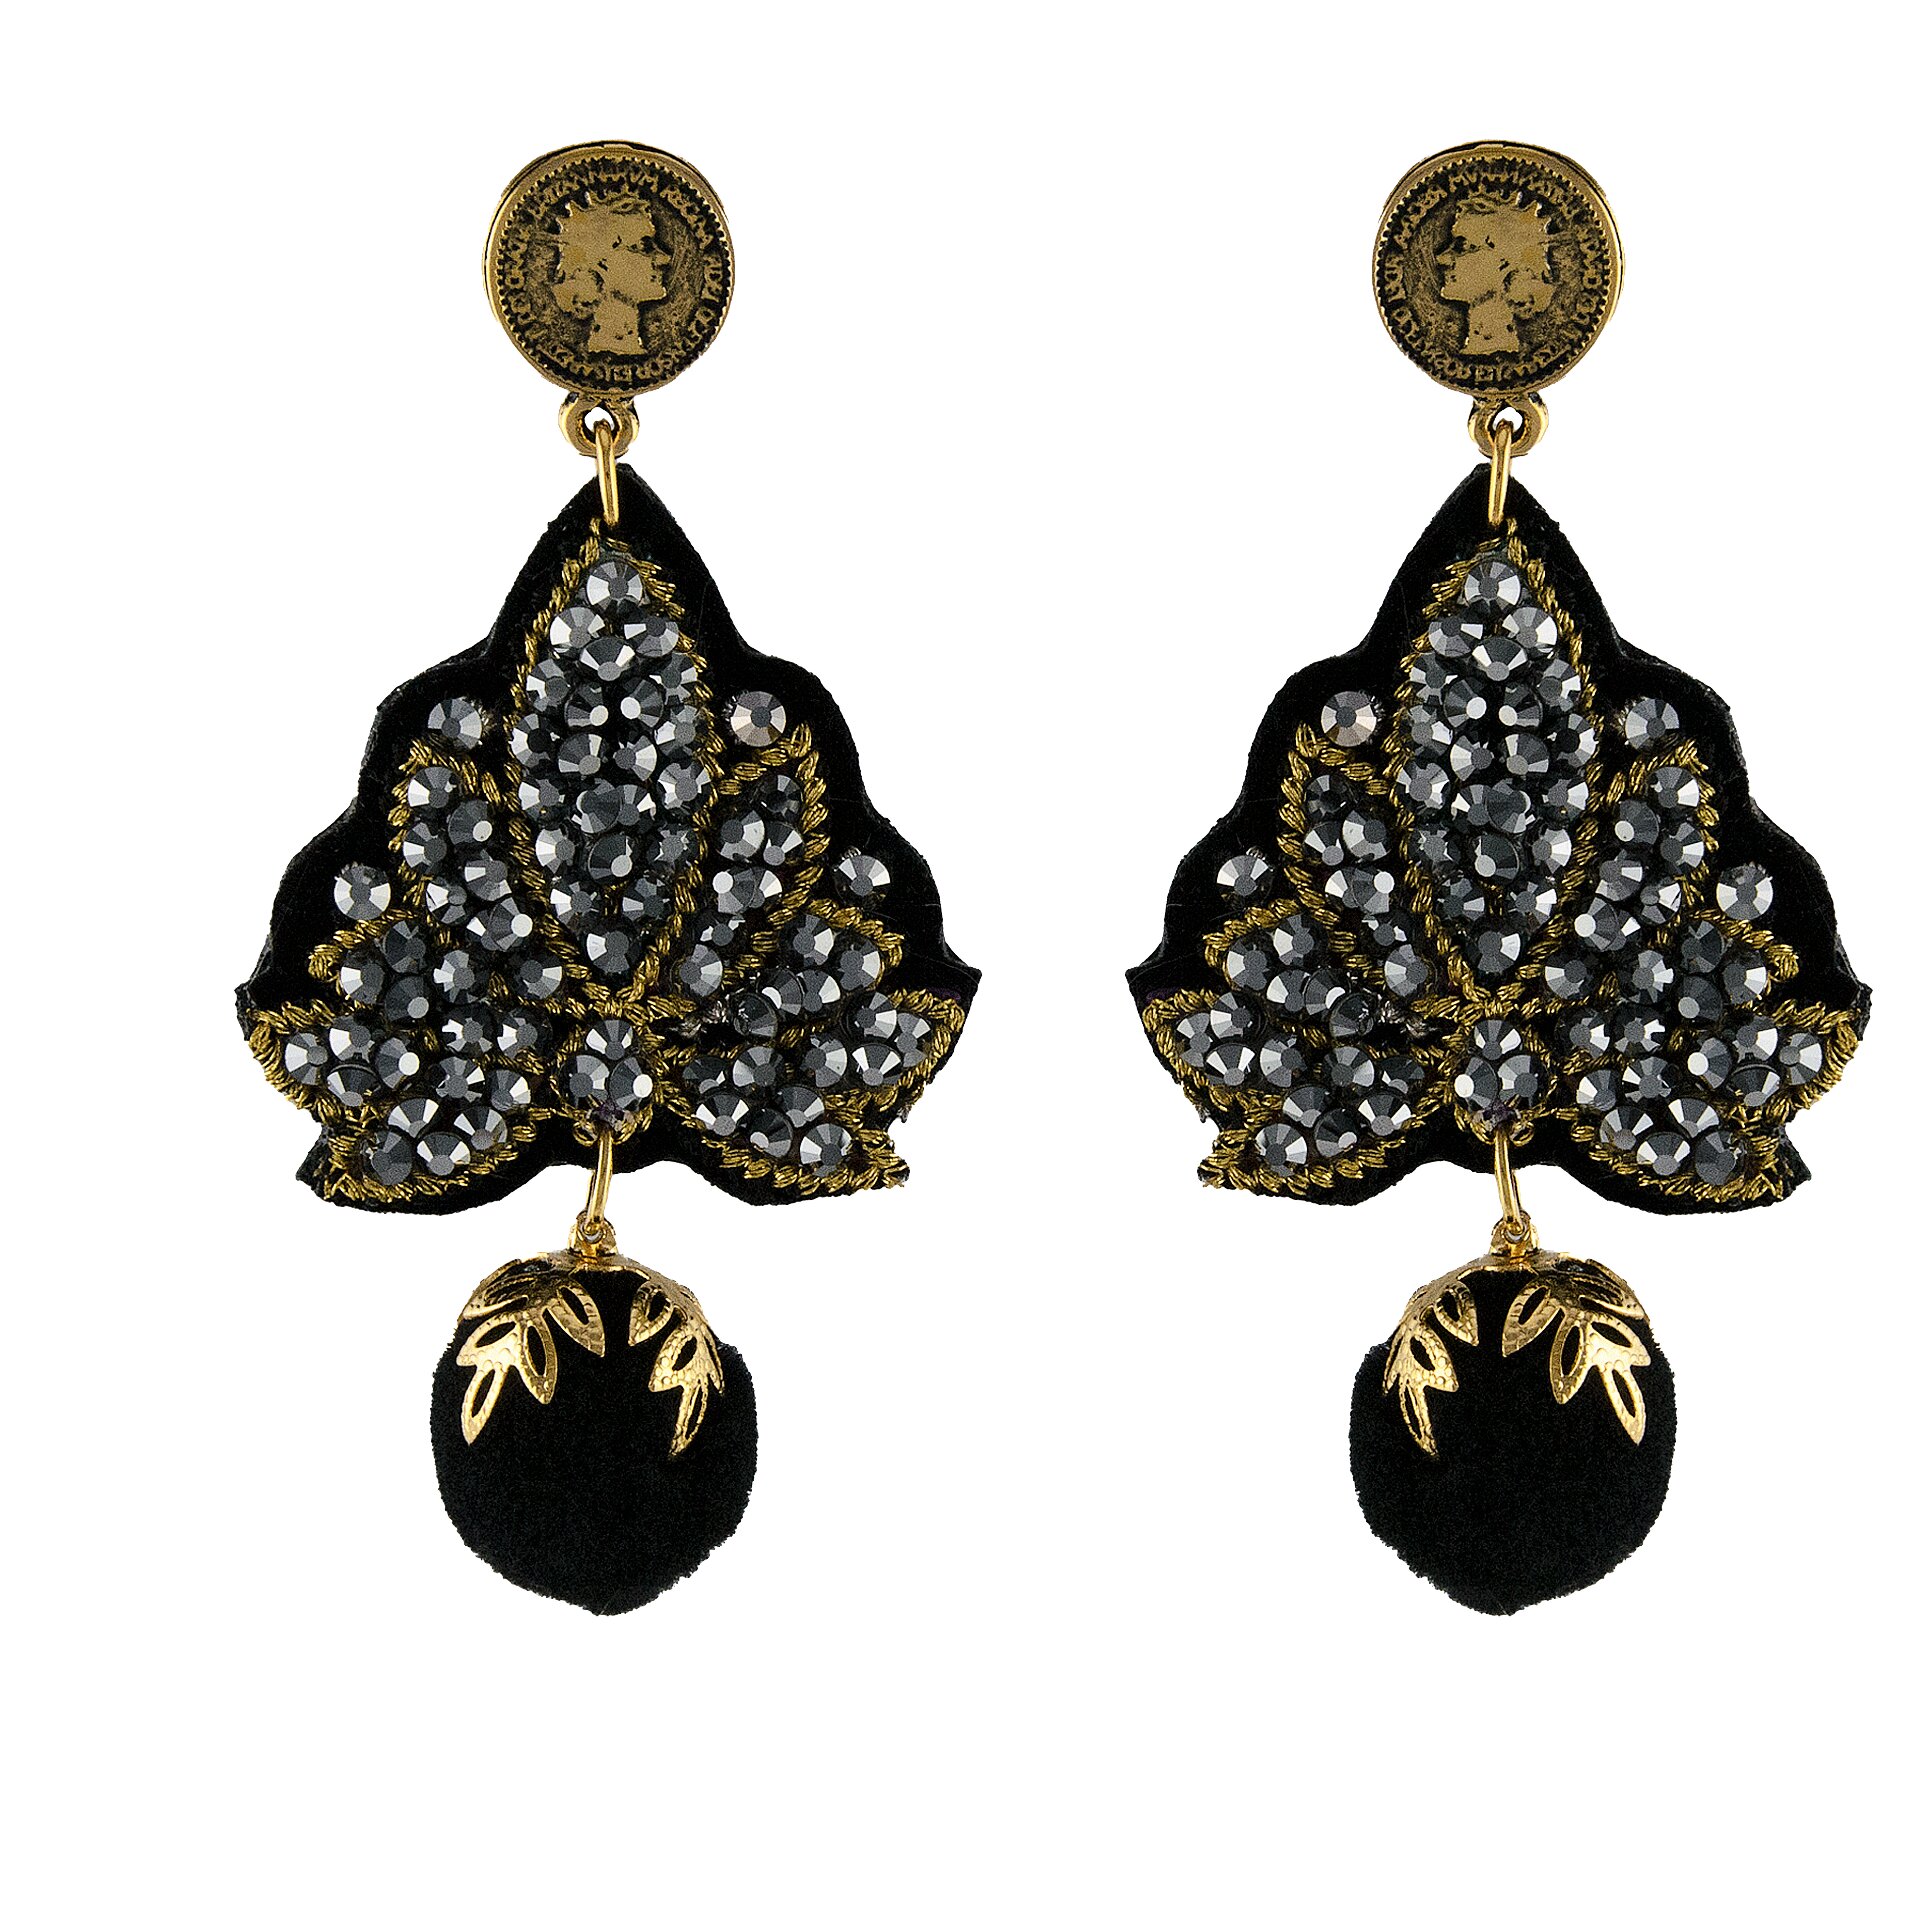 Γκρι σκουλαρίκια LINDA'S DREAM με μαύρο πομ πομ και χρυσά στοιχεία